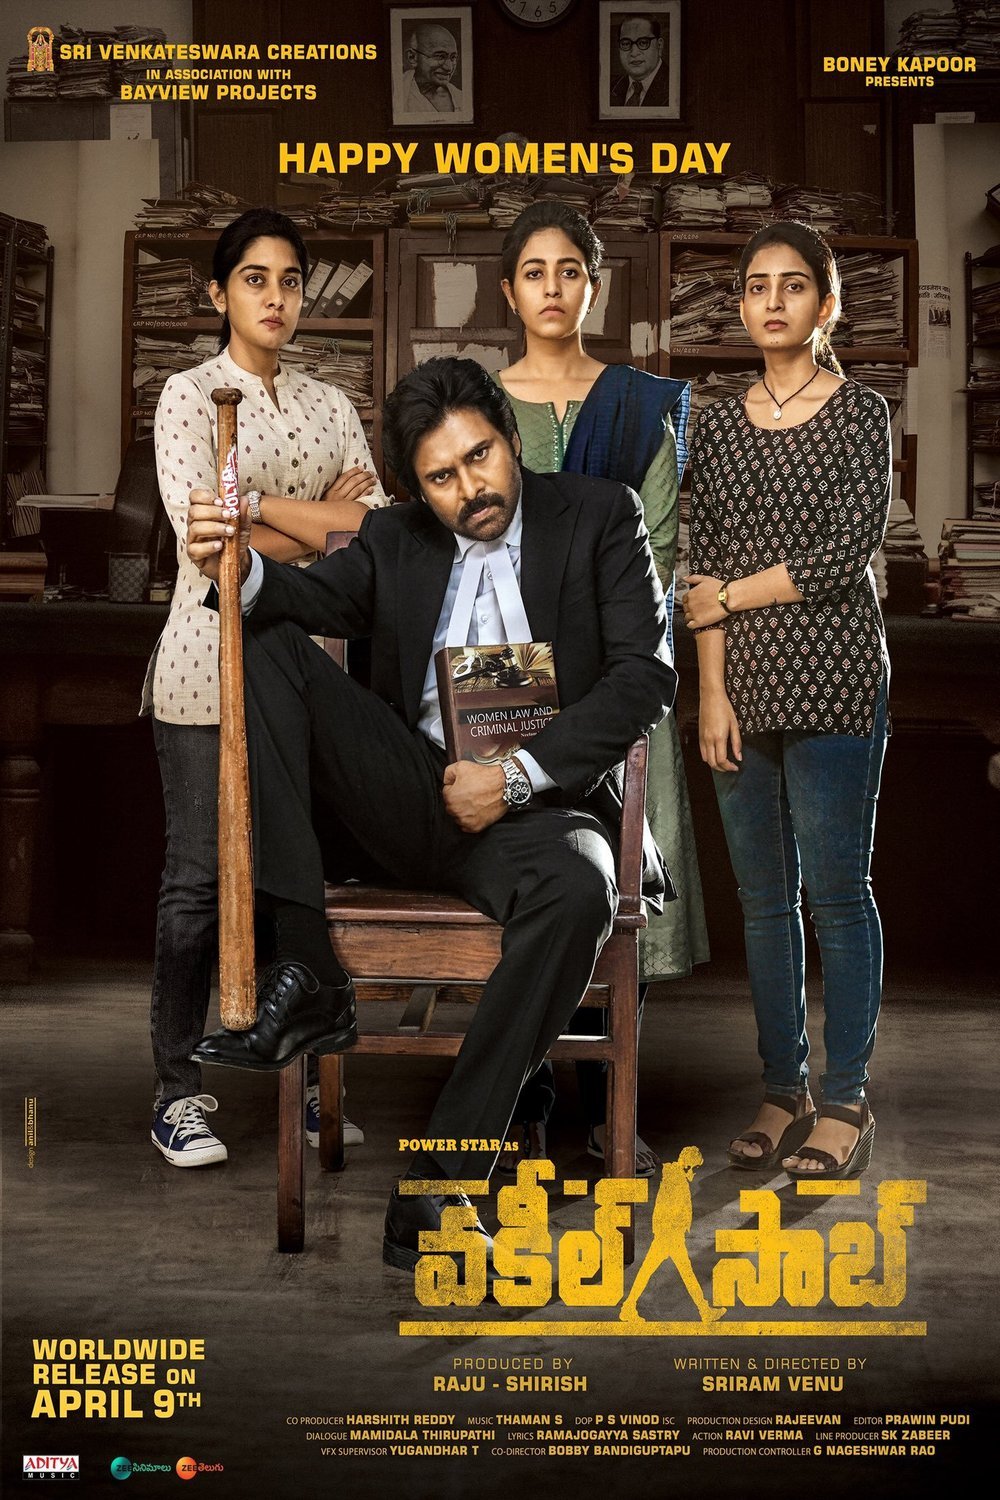 Telugu poster of the movie Vakeel Saab